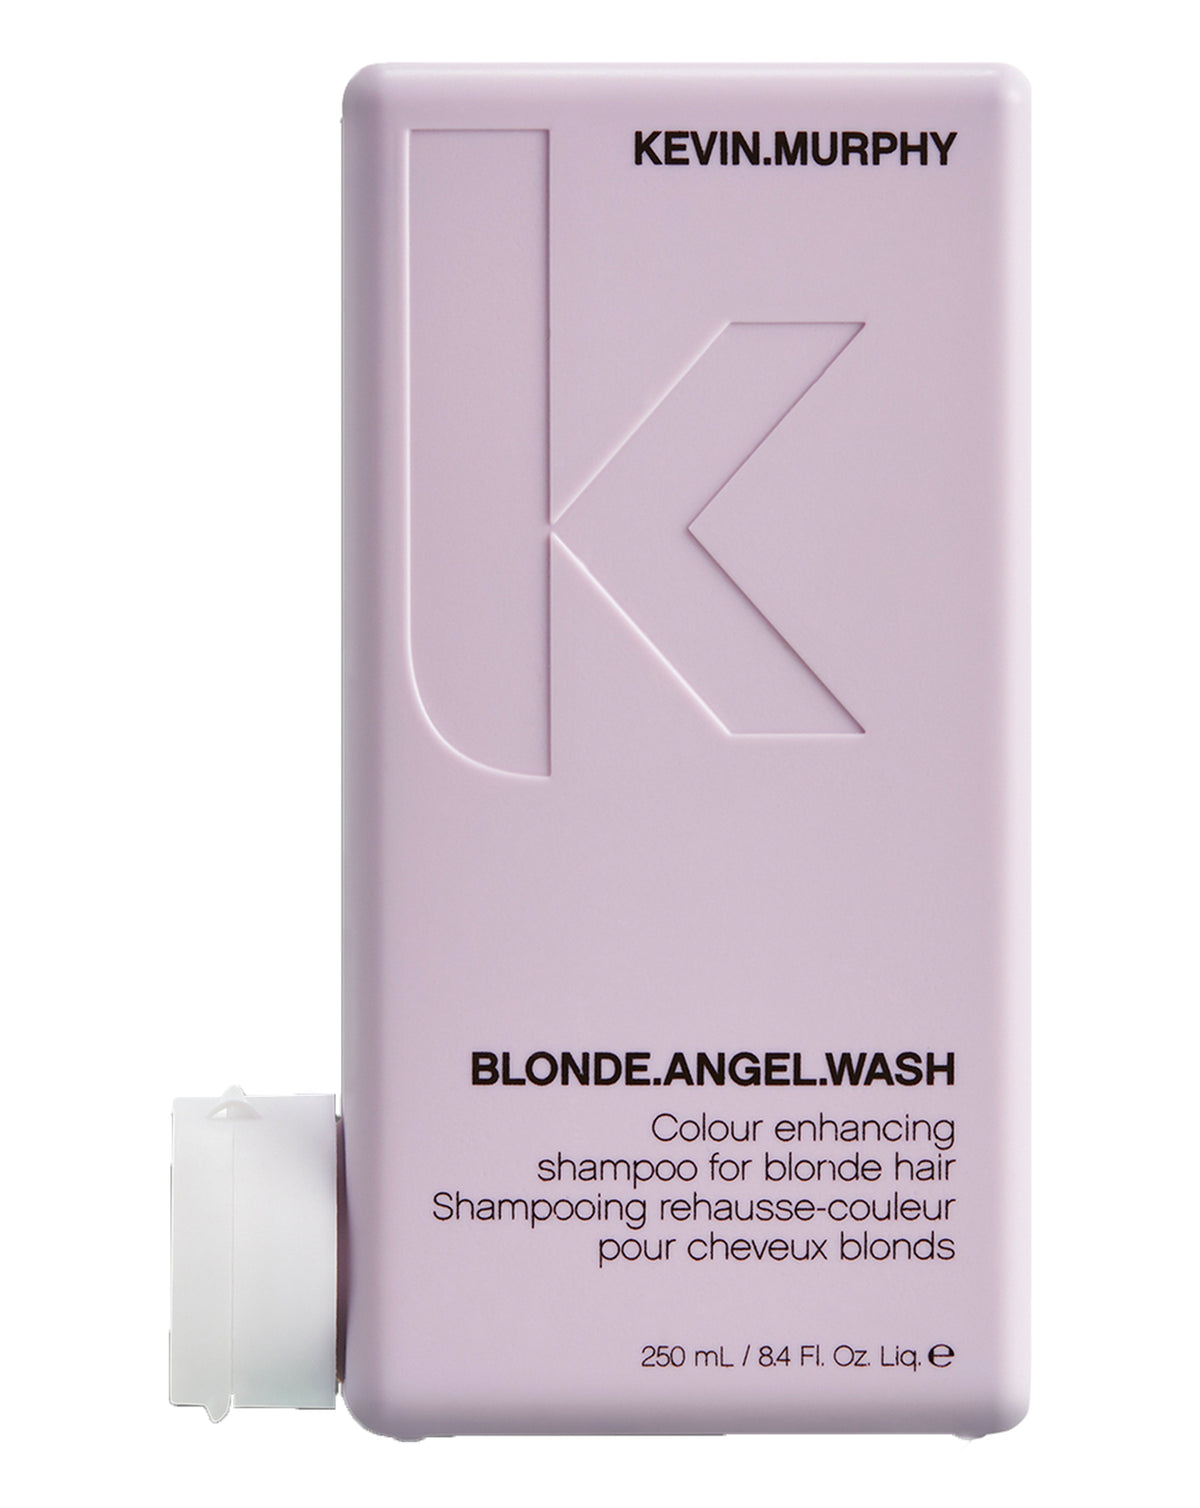 Blonde Angel Wash